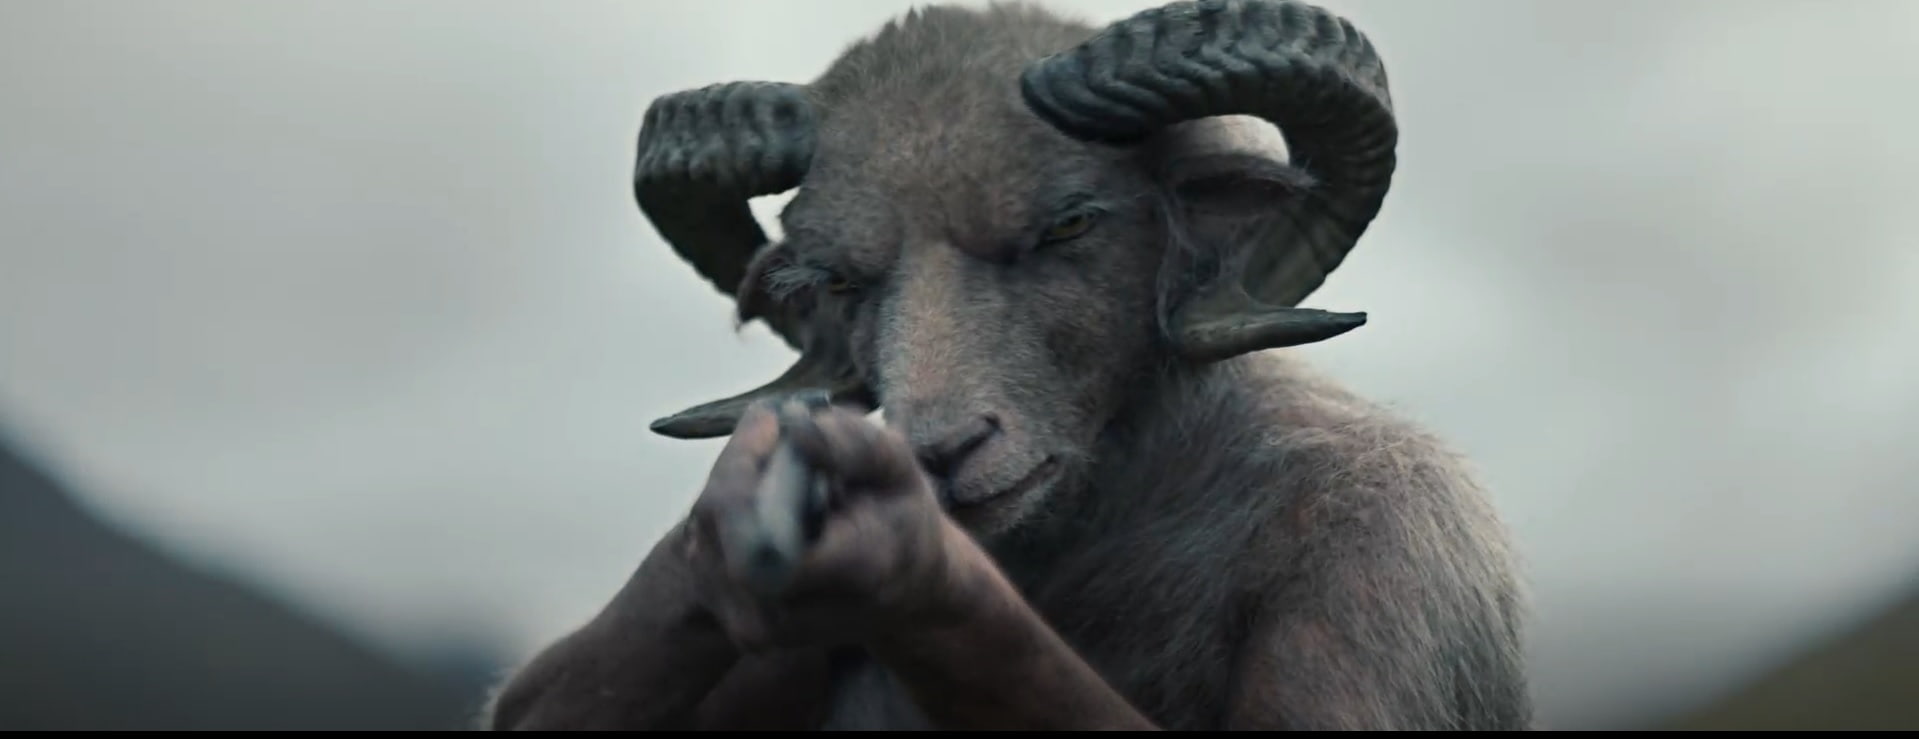 Review và giải thích phim Lamb (2021): Ảm đạm và quái dị đến kỳ lạ